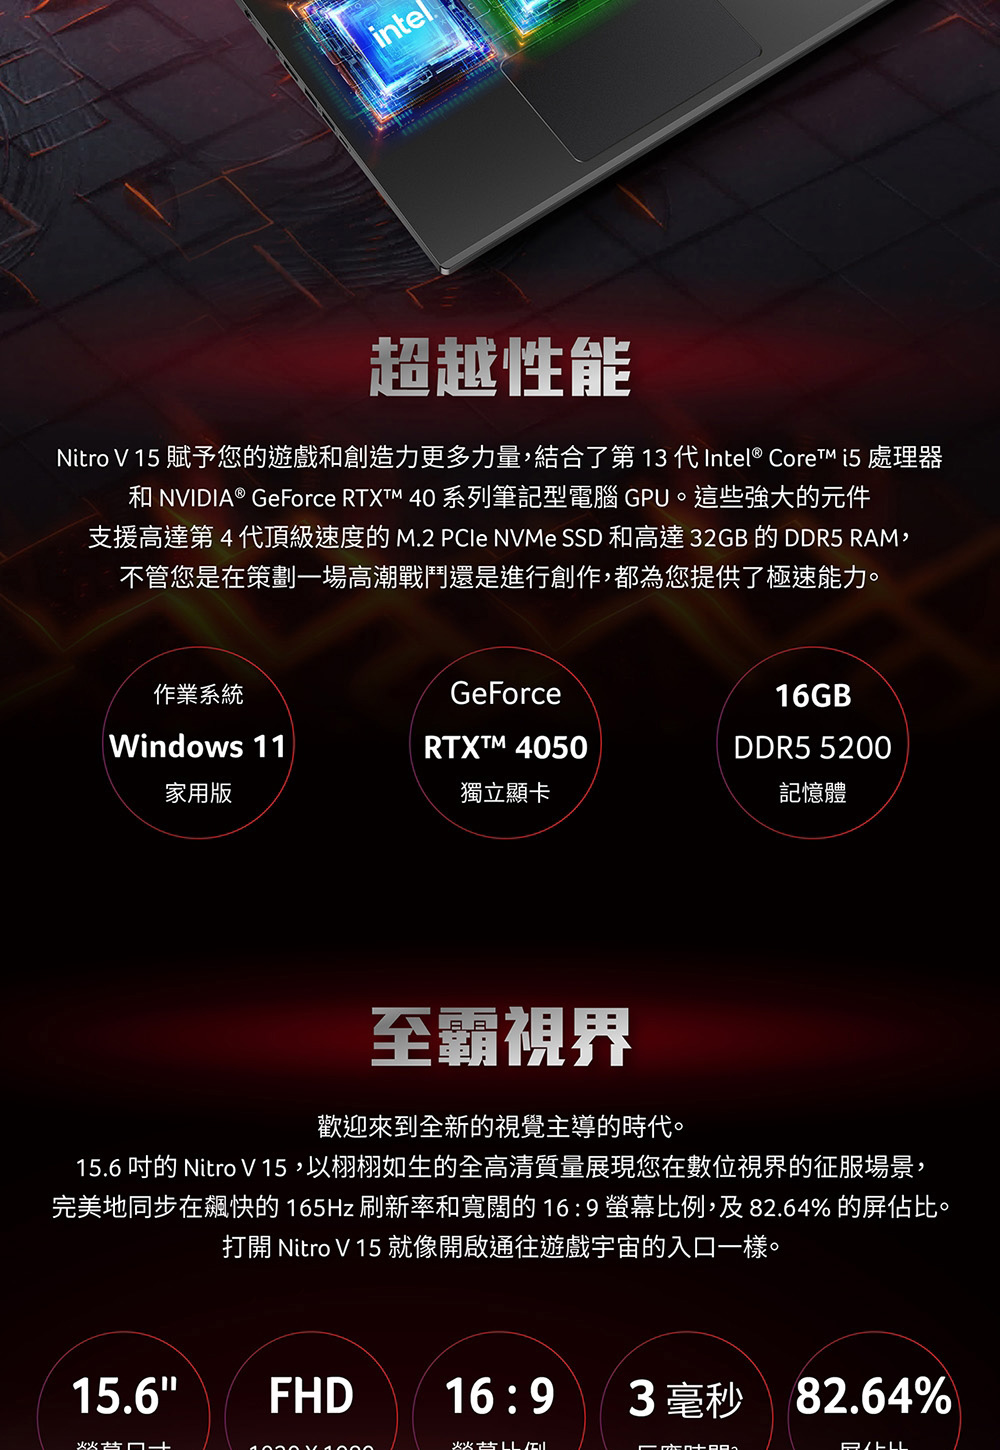 Nitro V 15 賦予您的遊戲和創造力更多力量,結合了第 13 代 Intel CoreTM i5 處理器